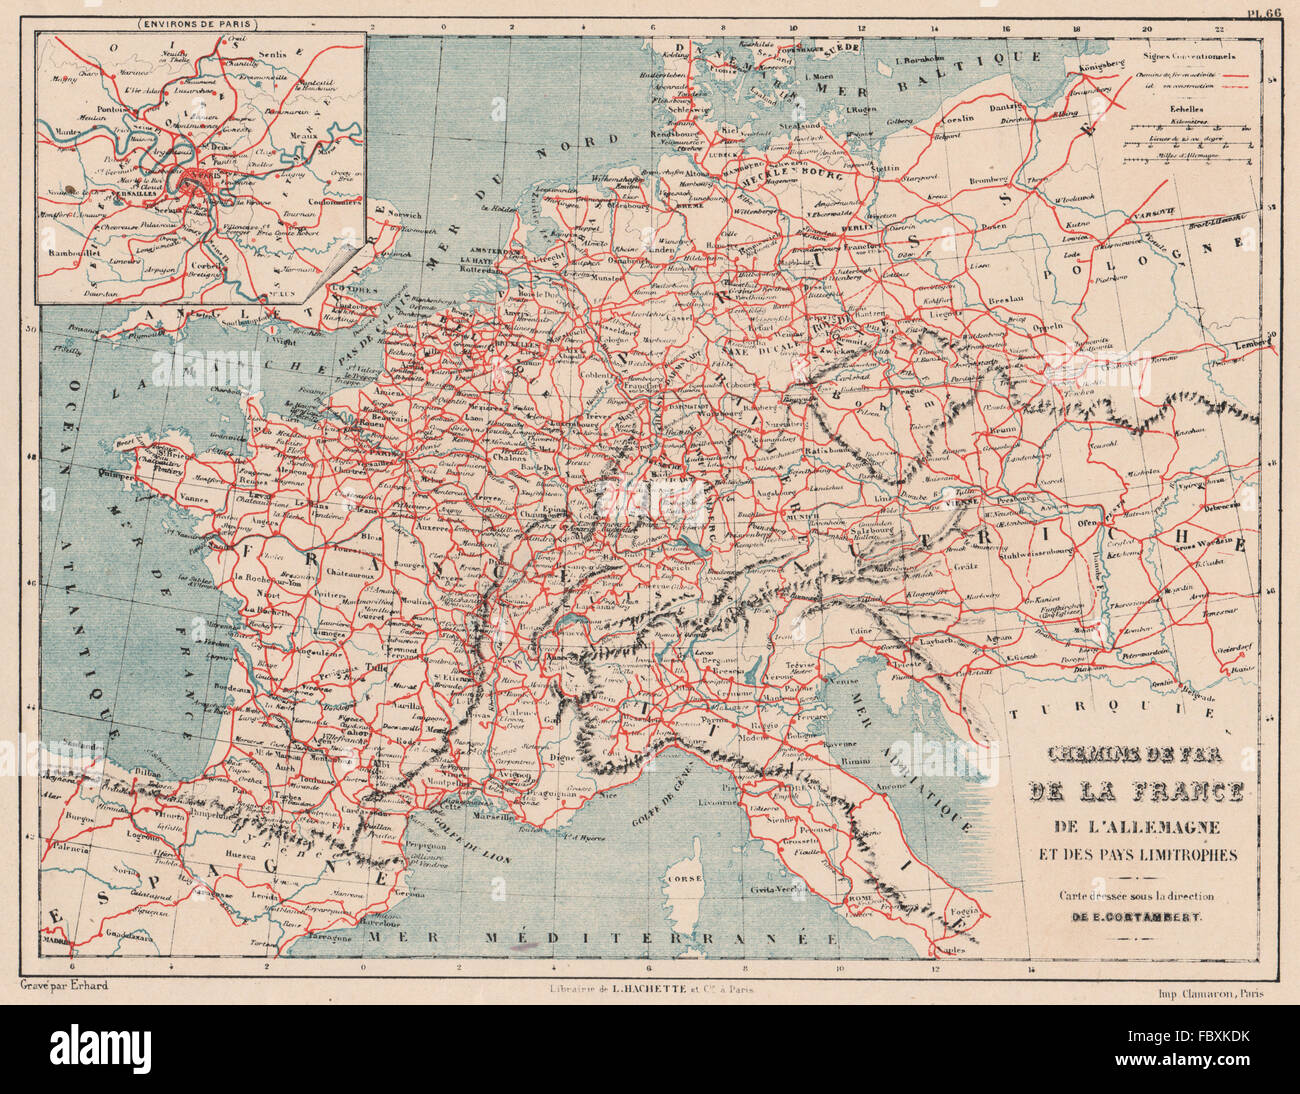 FRANKREICH & DEUTSCHLAND EISENBAHN. West-und Mitteleuropa. Chemins de Fer,  1880-Karte Stockfotografie - Alamy